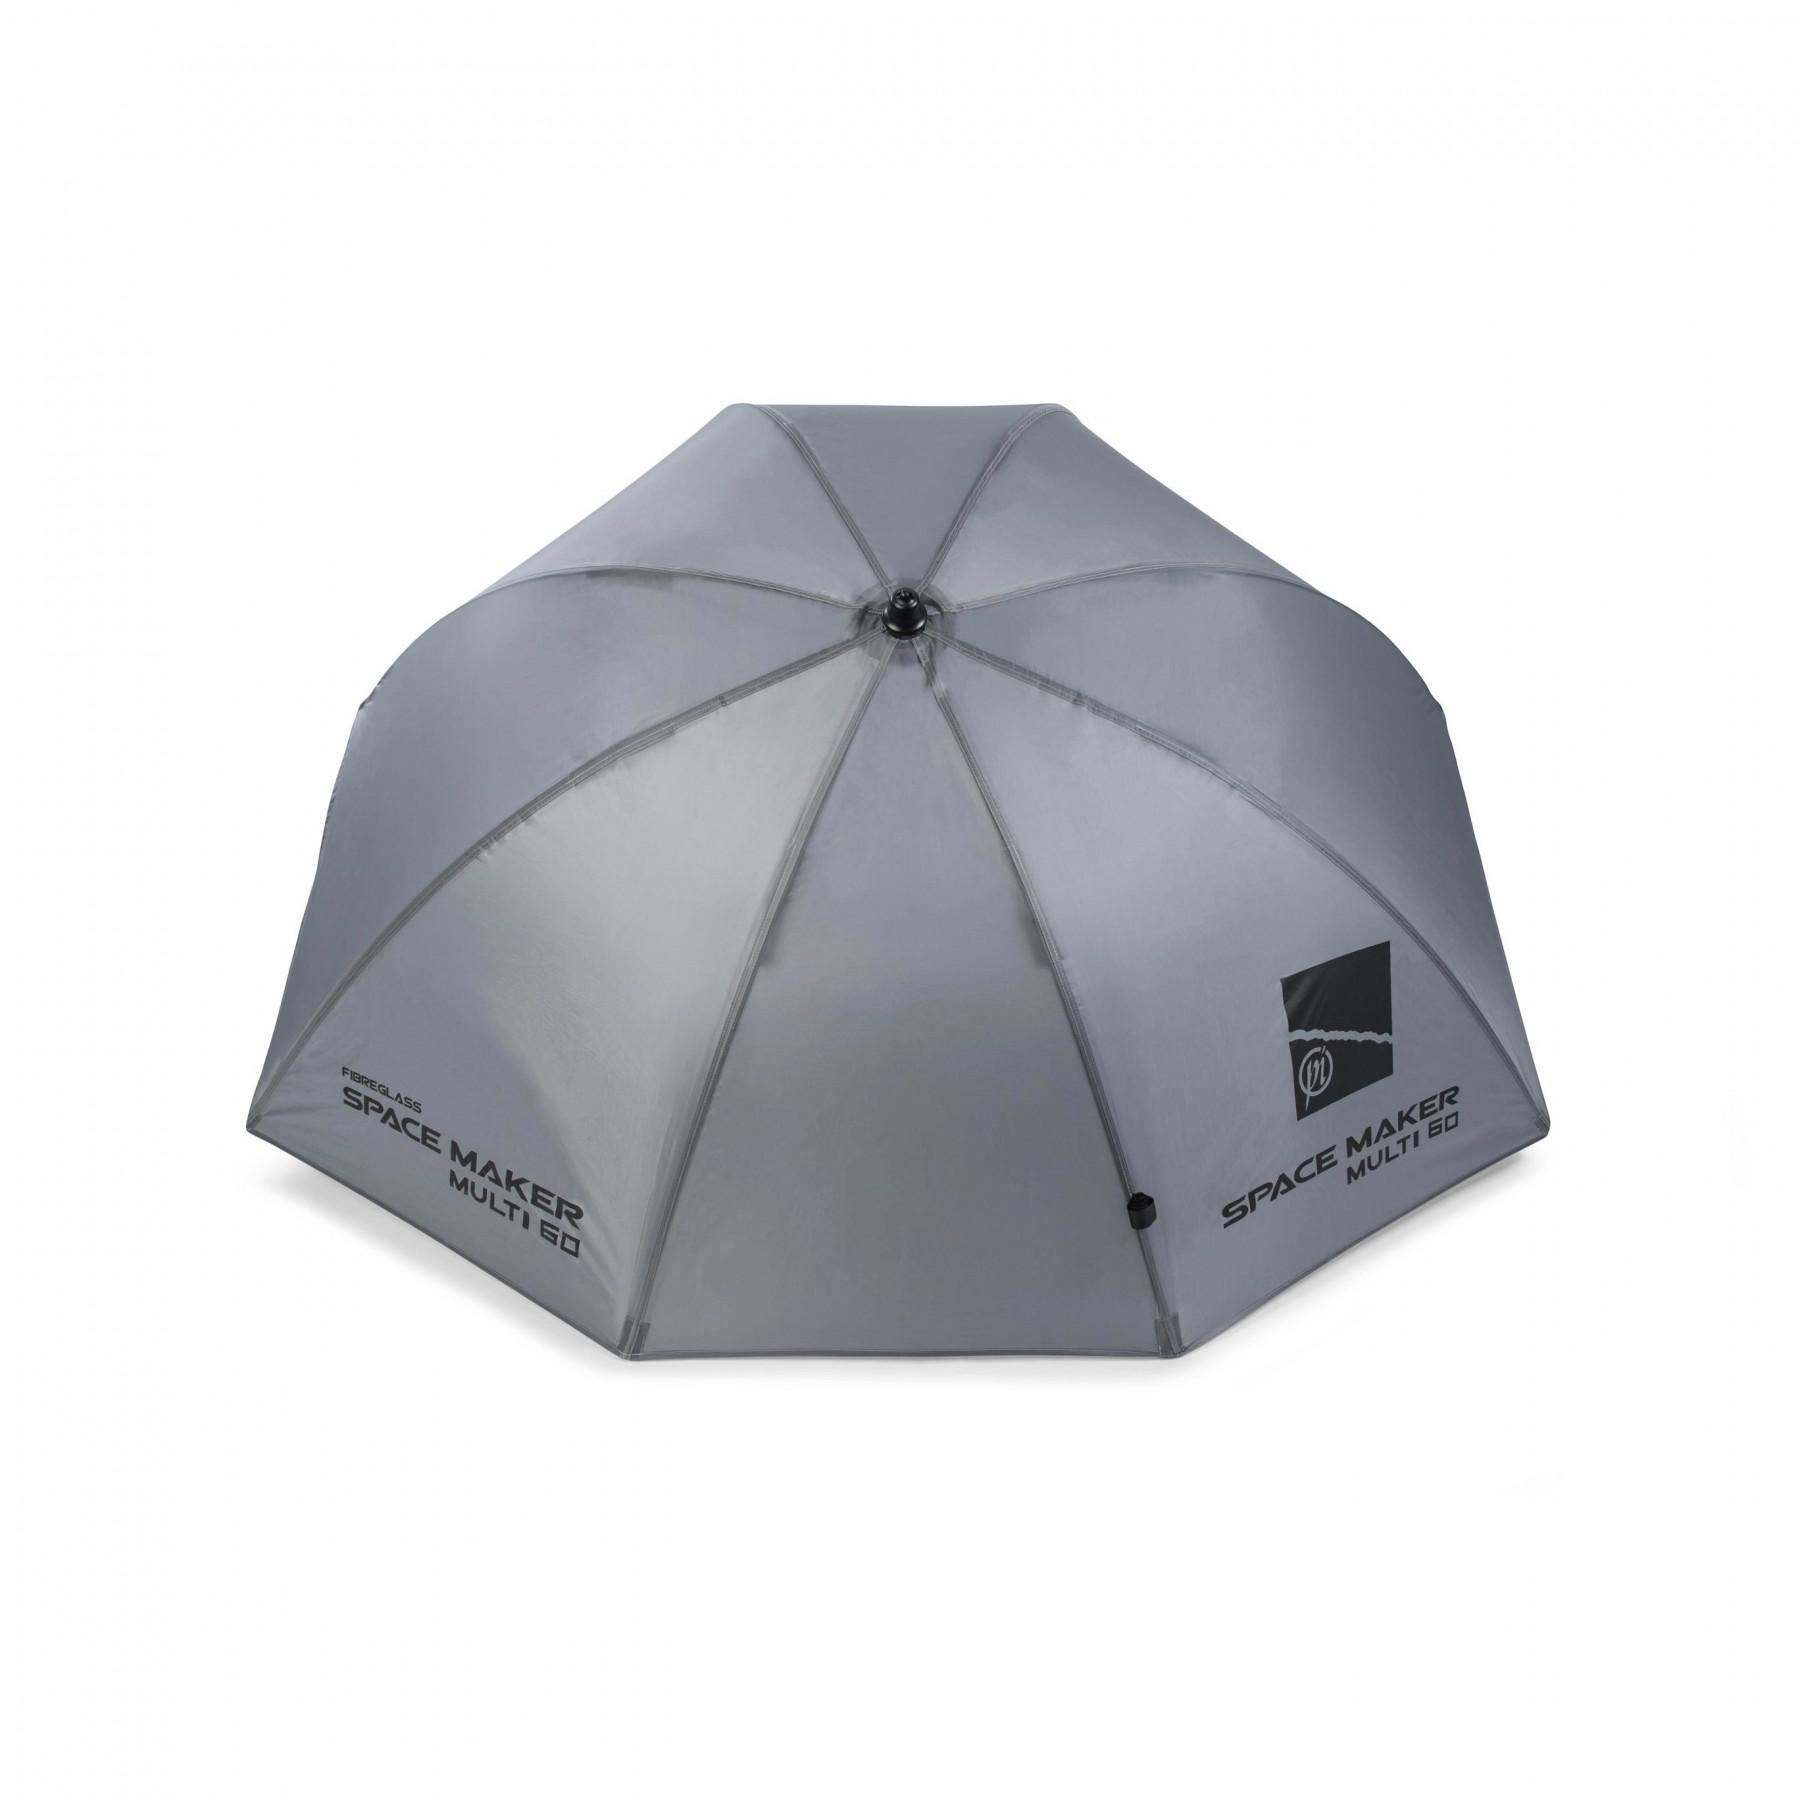 Umbrella Preston Space Maker Multi 60"